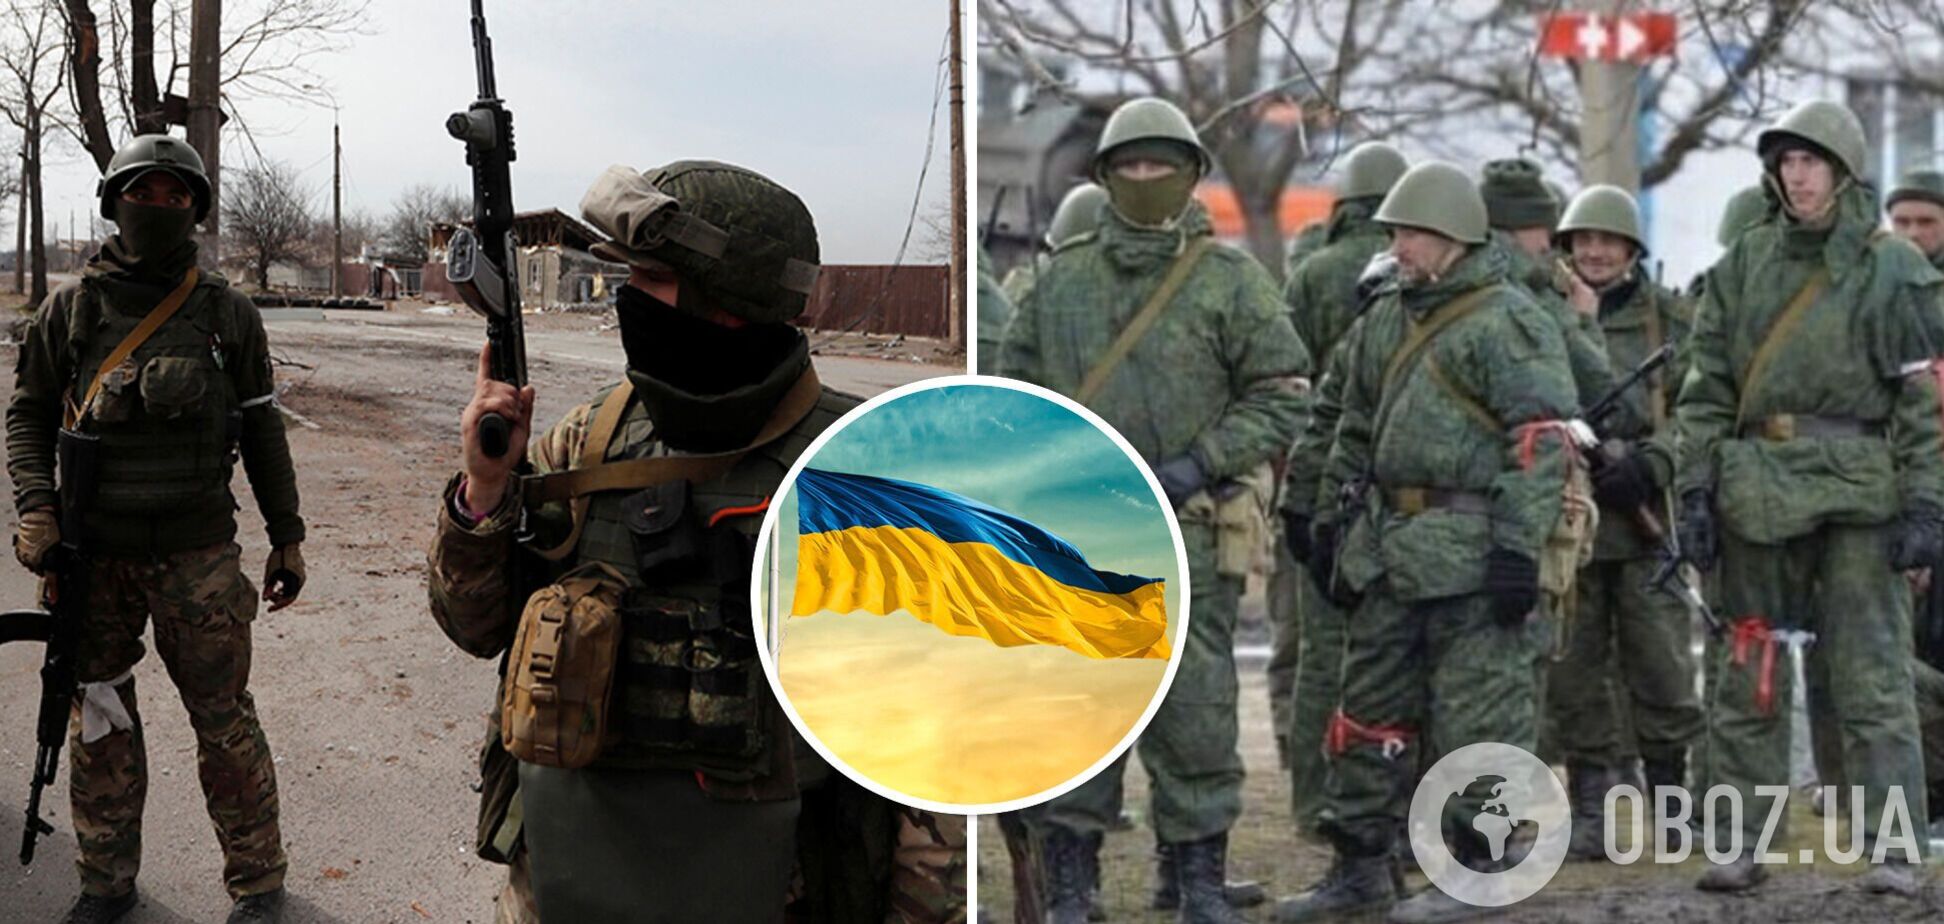 Российские оккупанты на передовой хотели снять видео с украинским флагом и стали '200-ми': всплыли доказательства